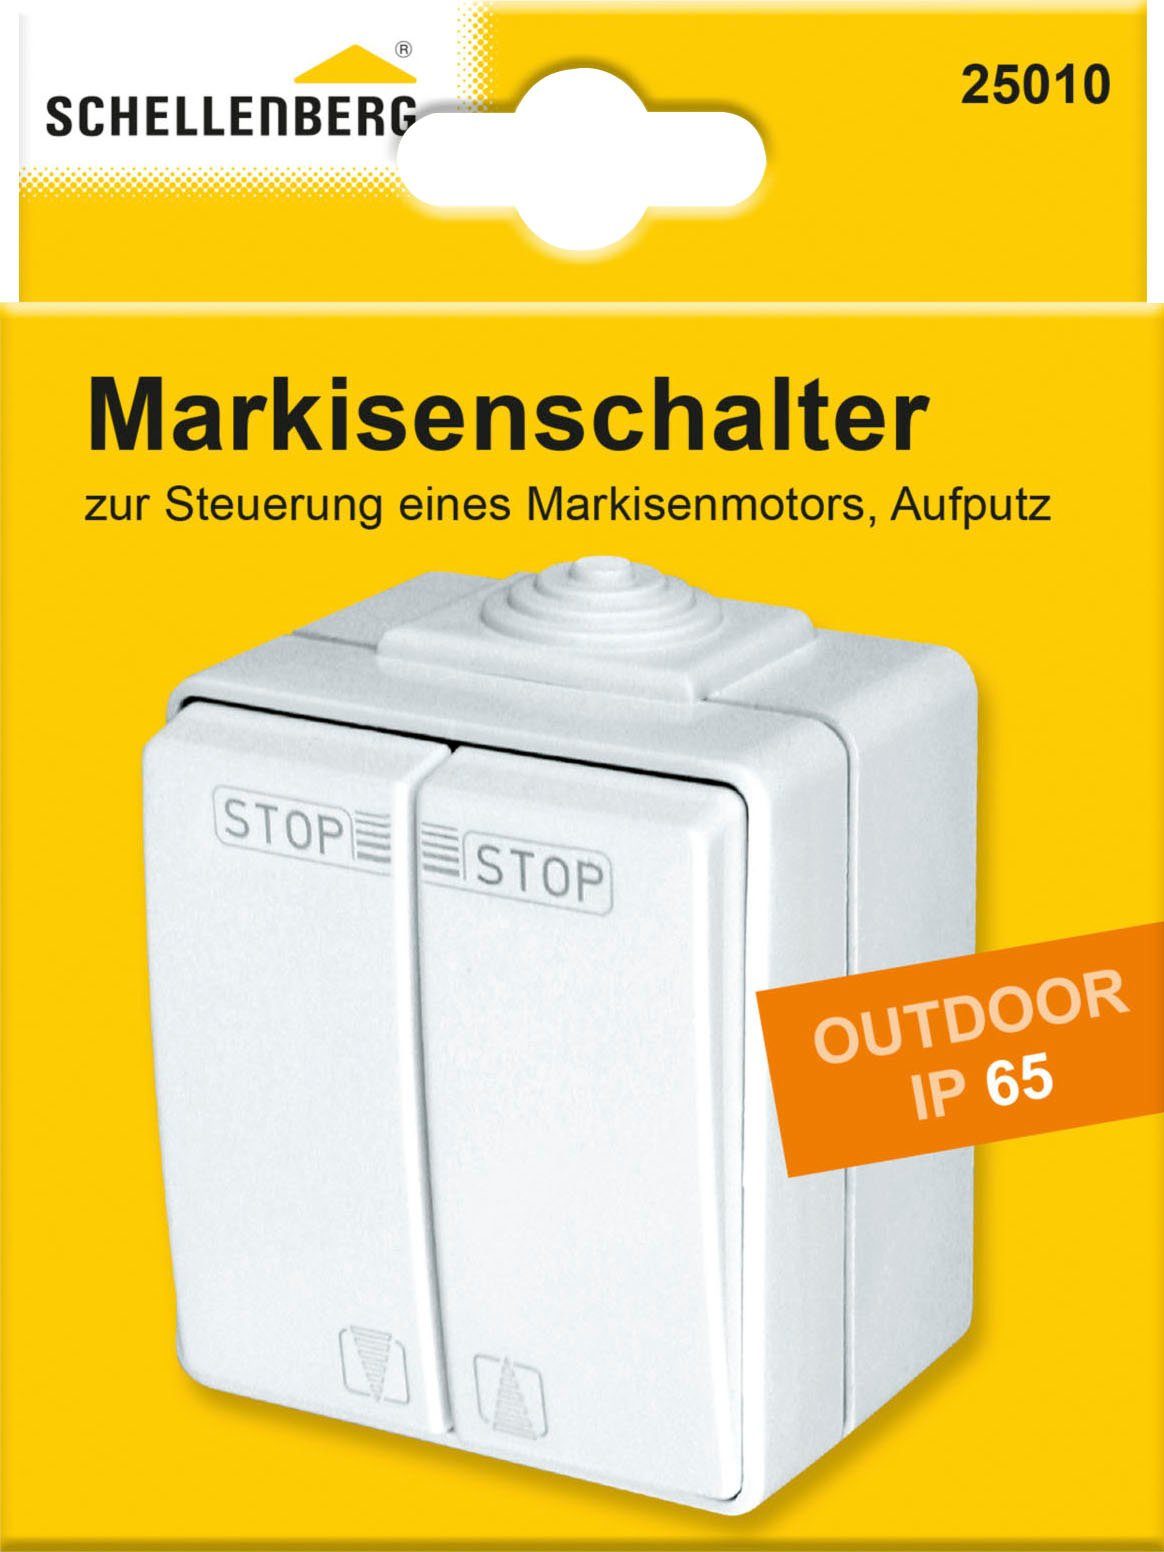 SCHELLENBERG Schalter für zur von Steuerung Markisenmotoren IP Außenbereich mechanischer Markisen, mit Endlageneinstellung 65, mit